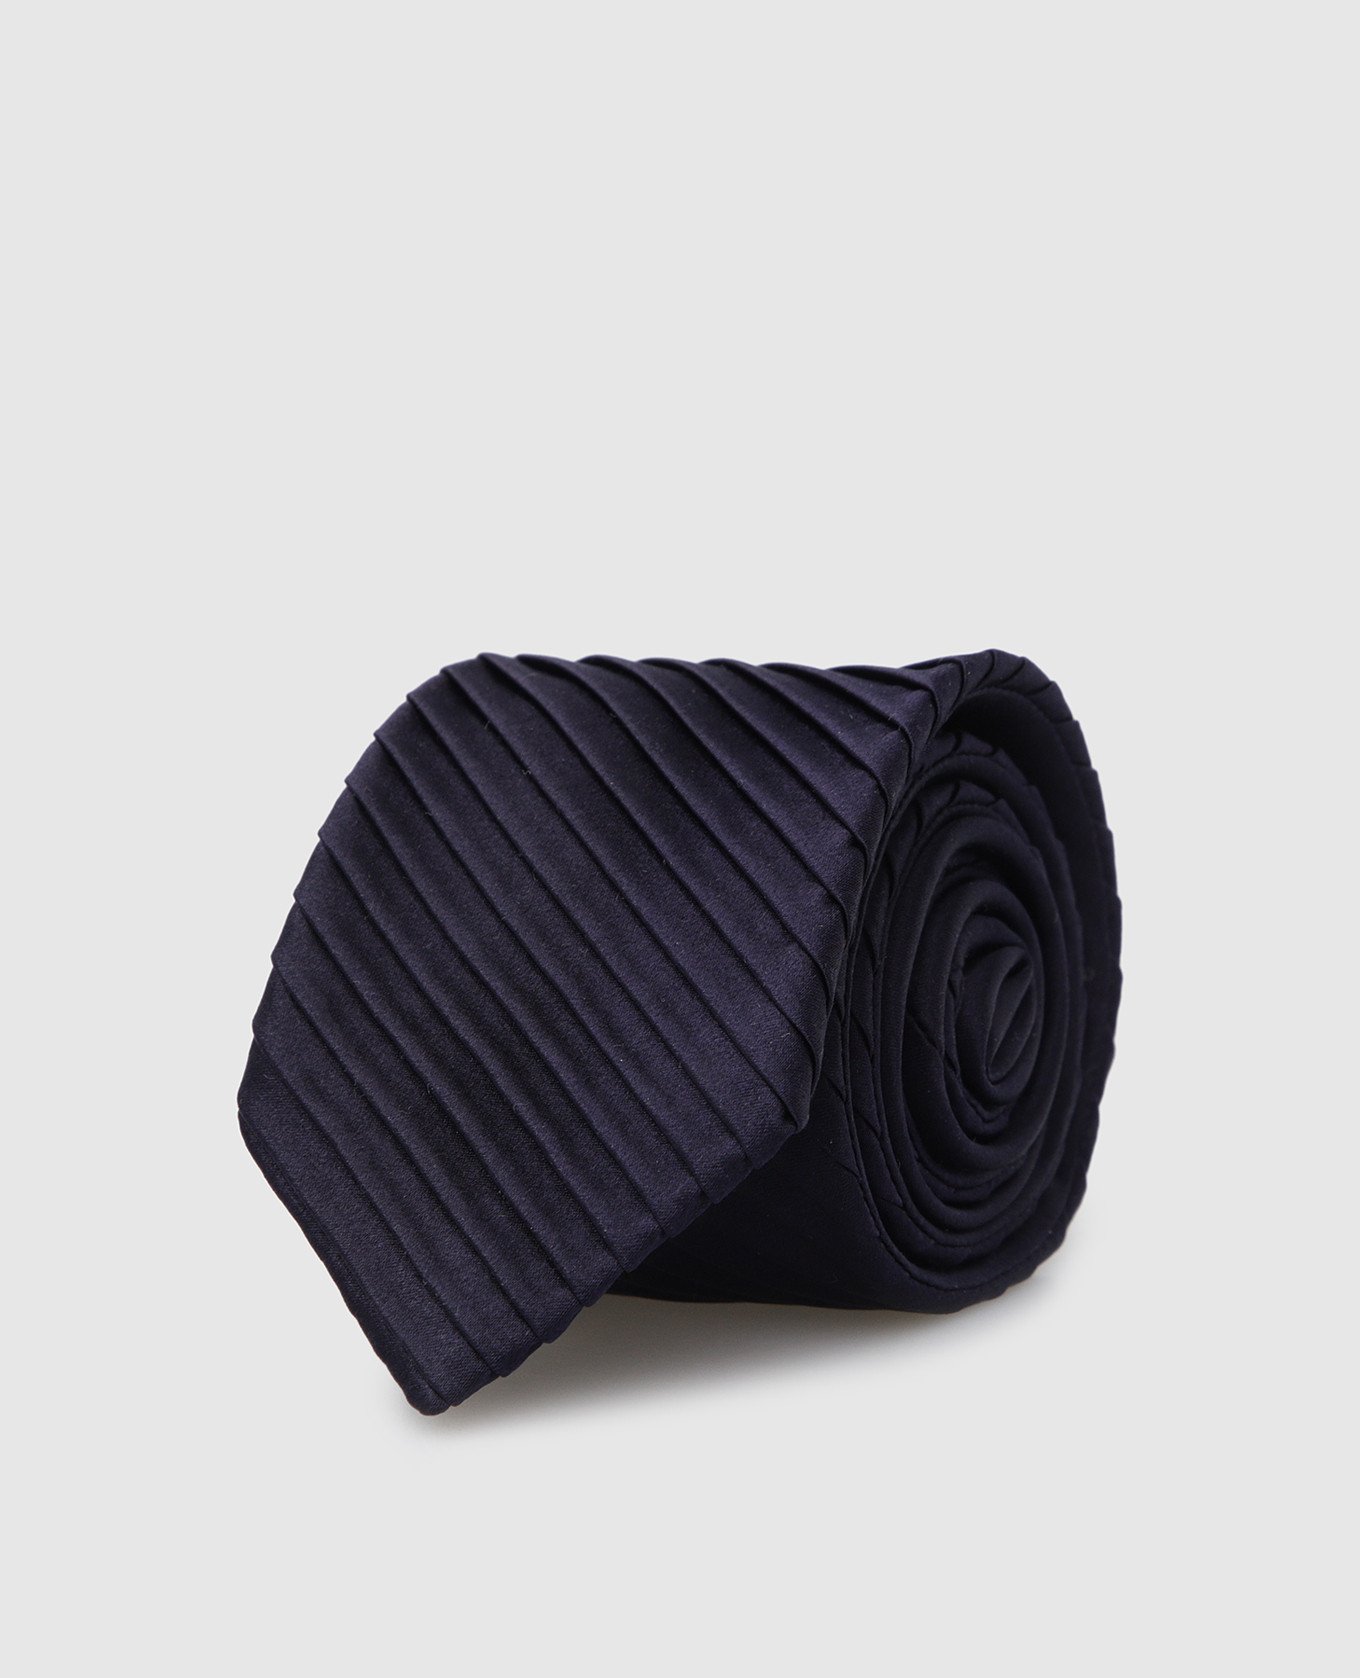 Children's silk tie with tucks